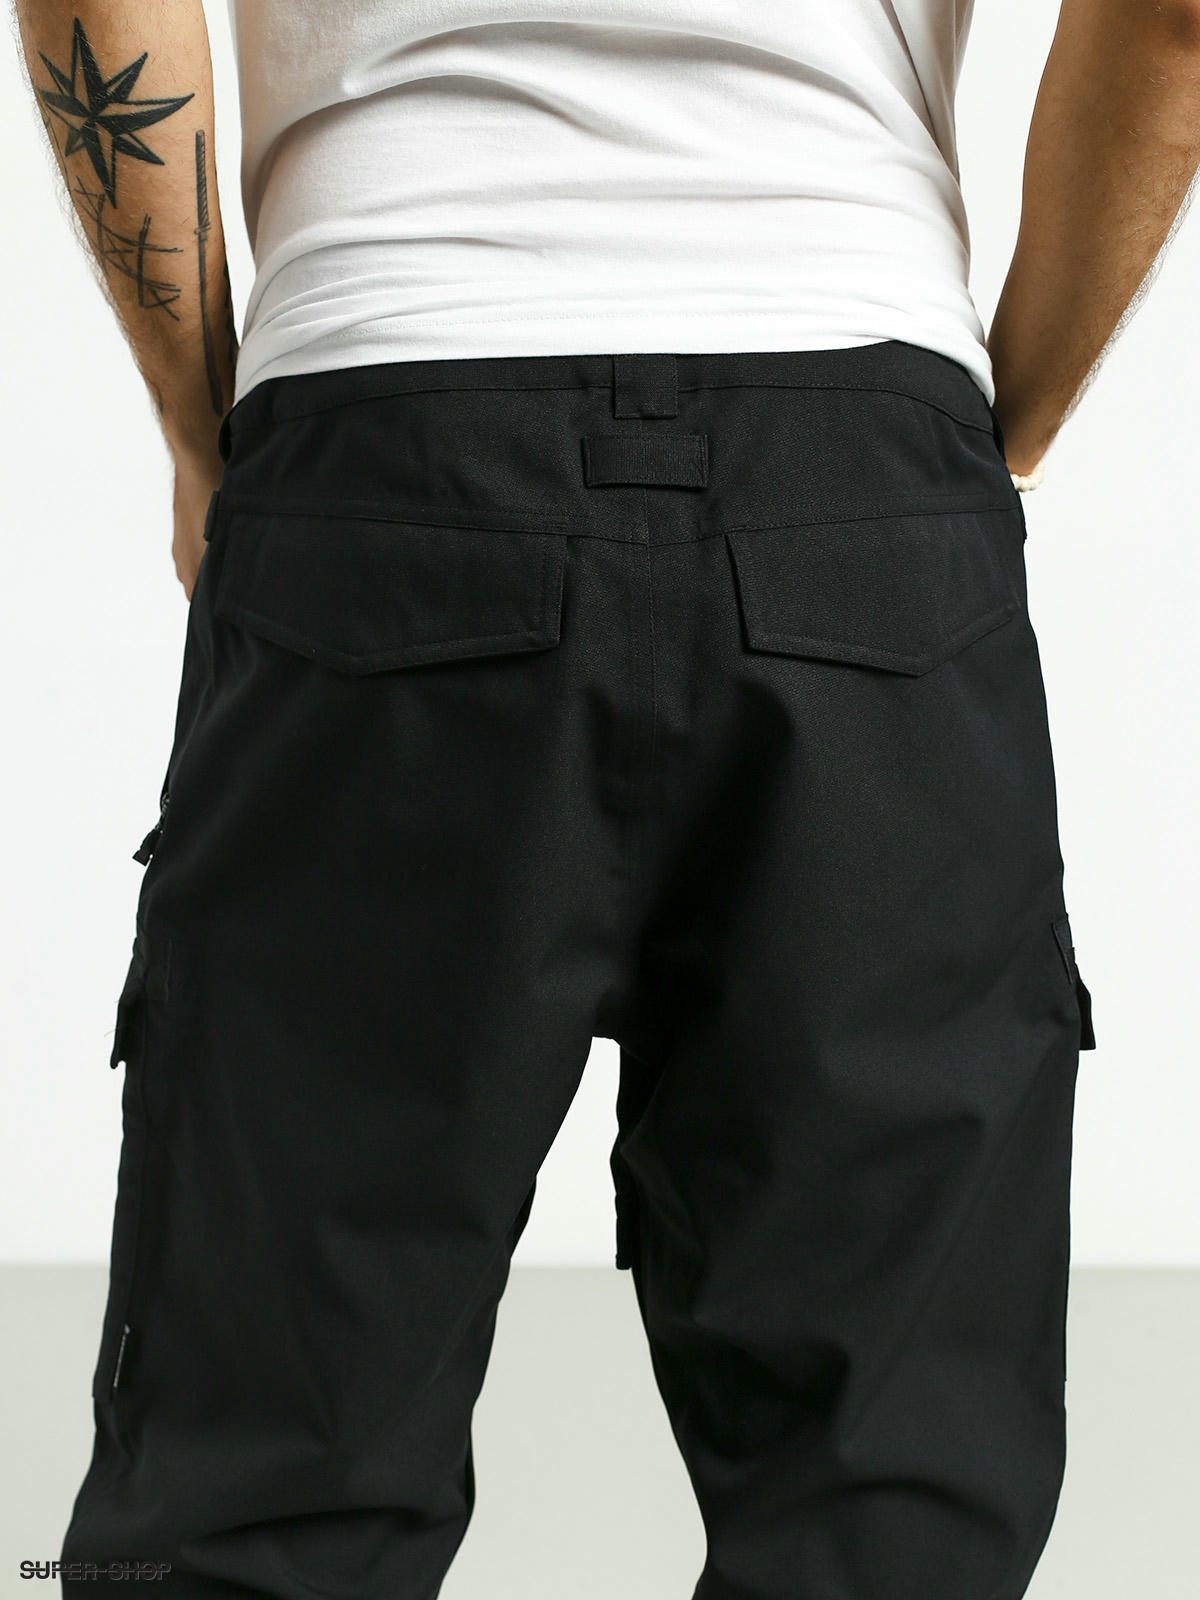 Dc Banshee Pants Size Chart